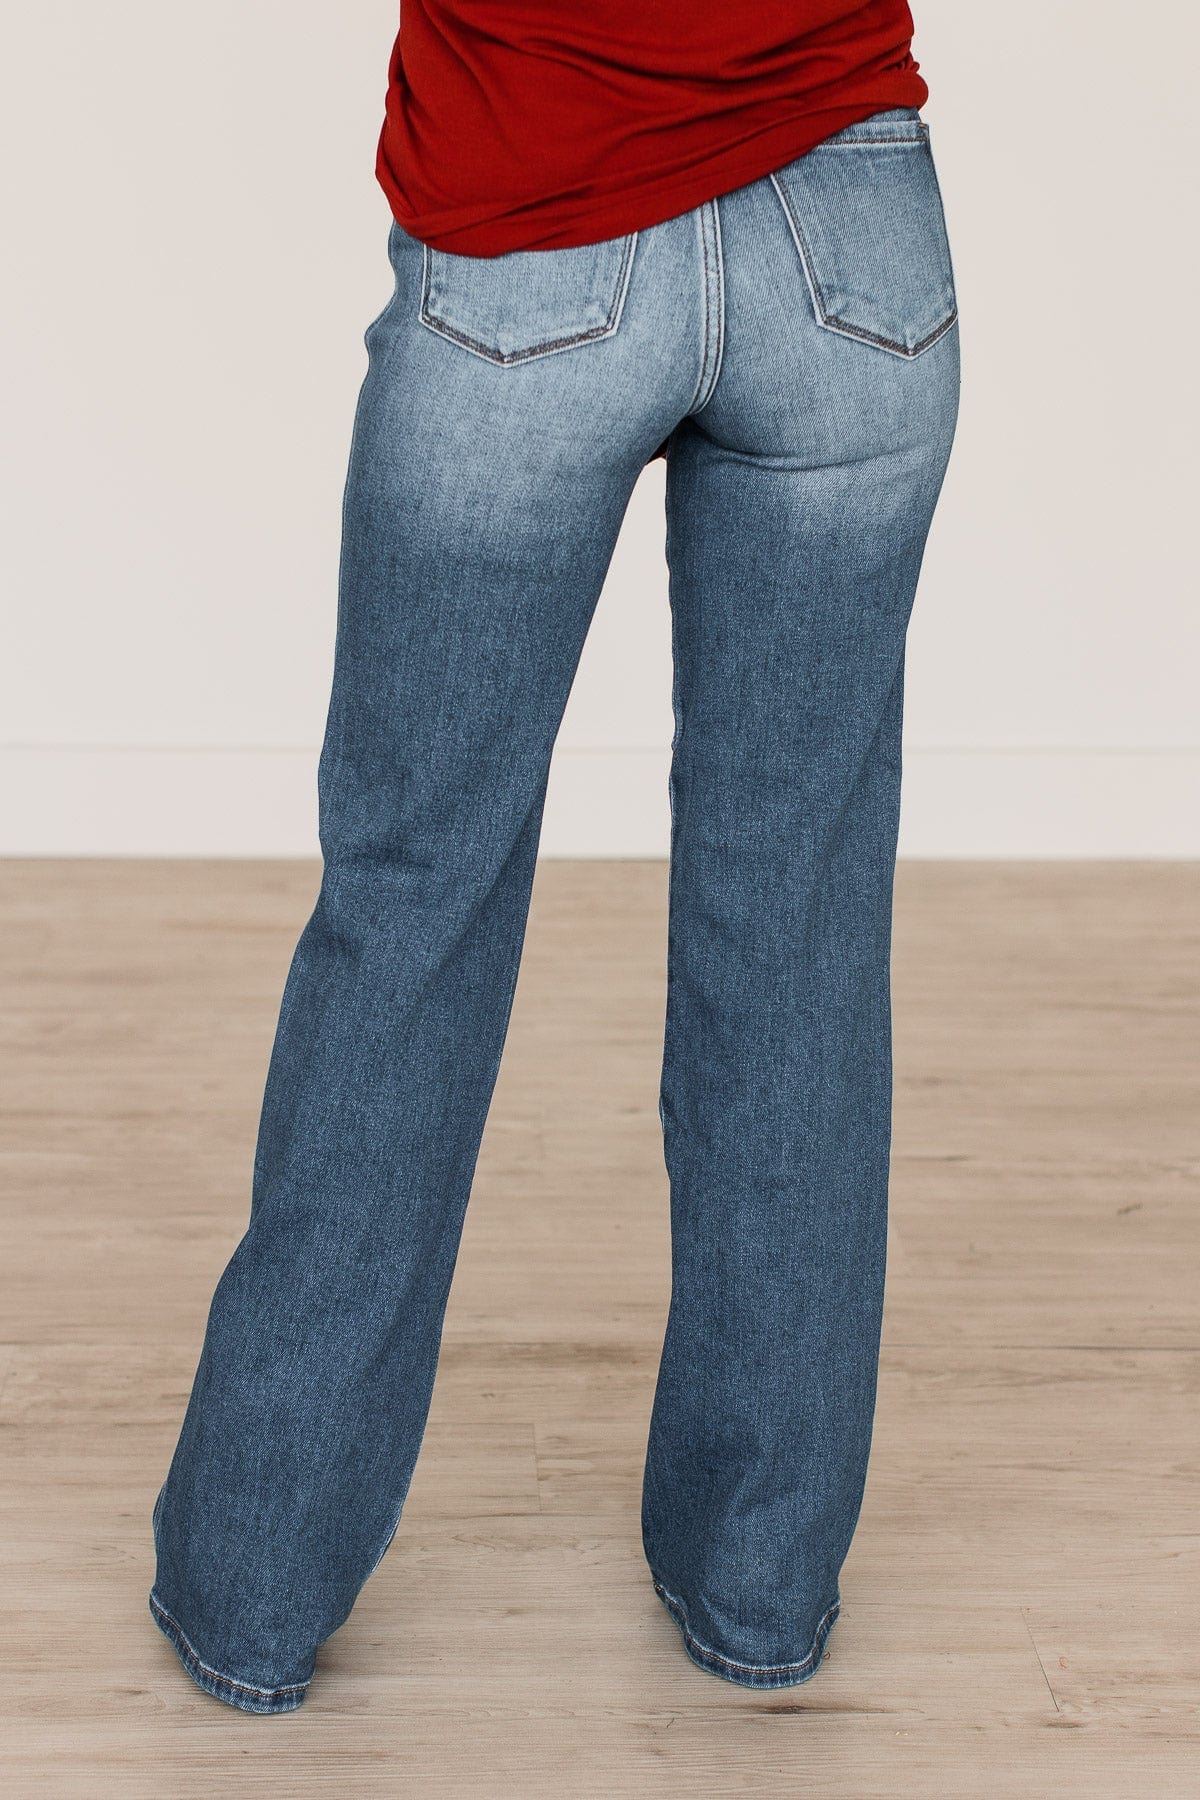 KanCan Ultra High Rise Flare Jeans- Zara Wash